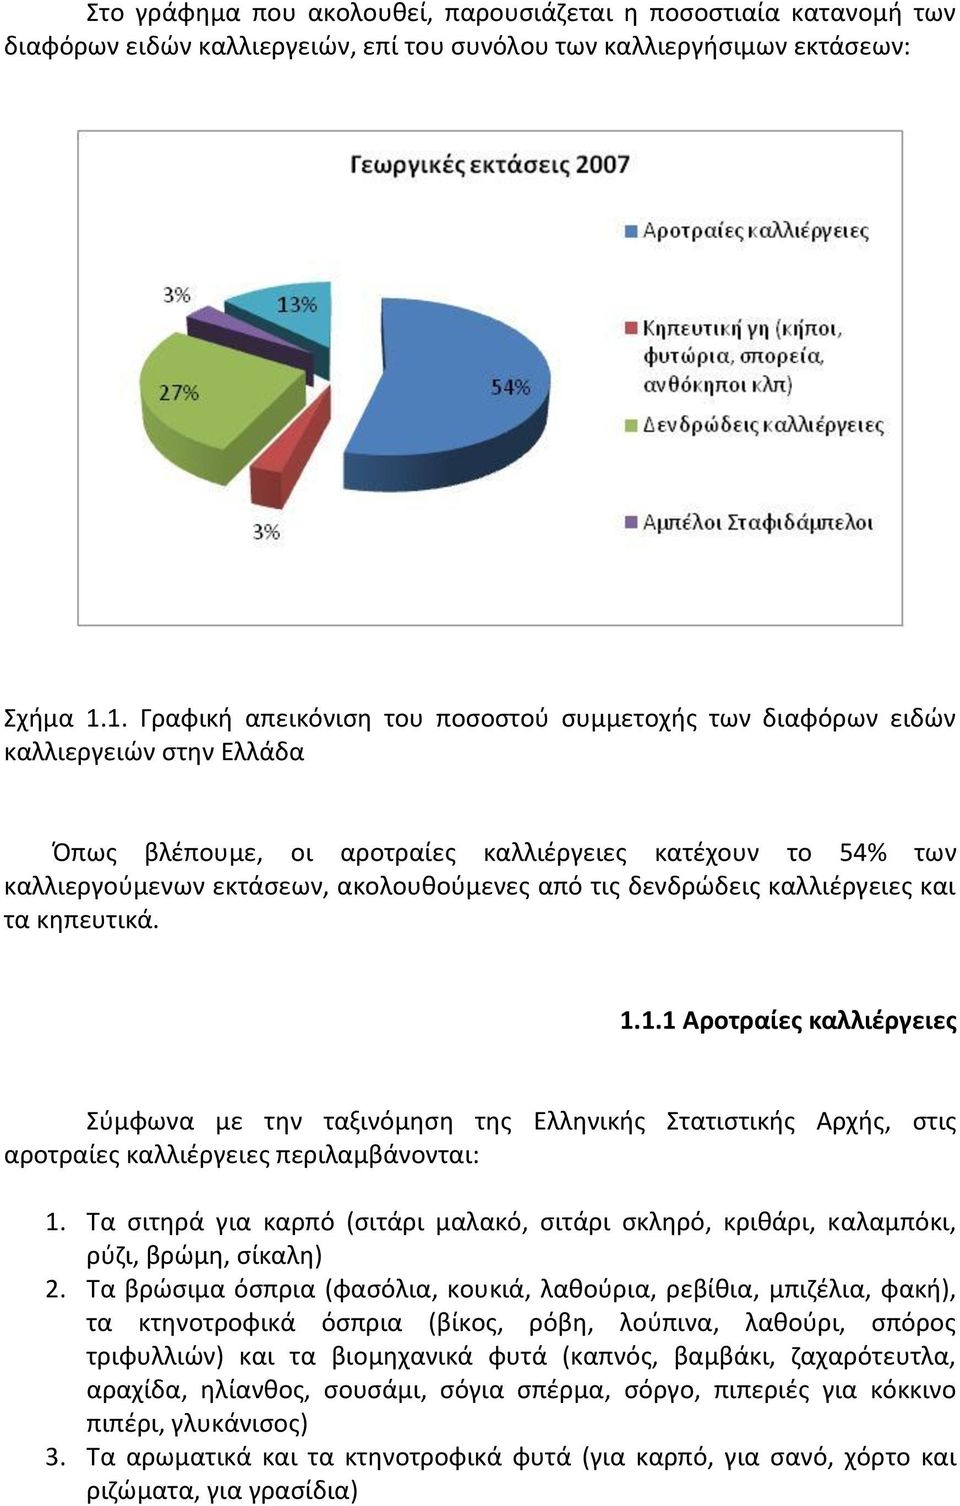 δενδρώδεις καλλιέργειες και τα κηπευτικά. 1.1.1 Αροτραίες καλλιέργειες Σύμφωνα με την ταξινόμηση της Ελληνικής Στατιστικής Αρχής, στις αροτραίες καλλιέργειες περιλαμβάνονται: 1.